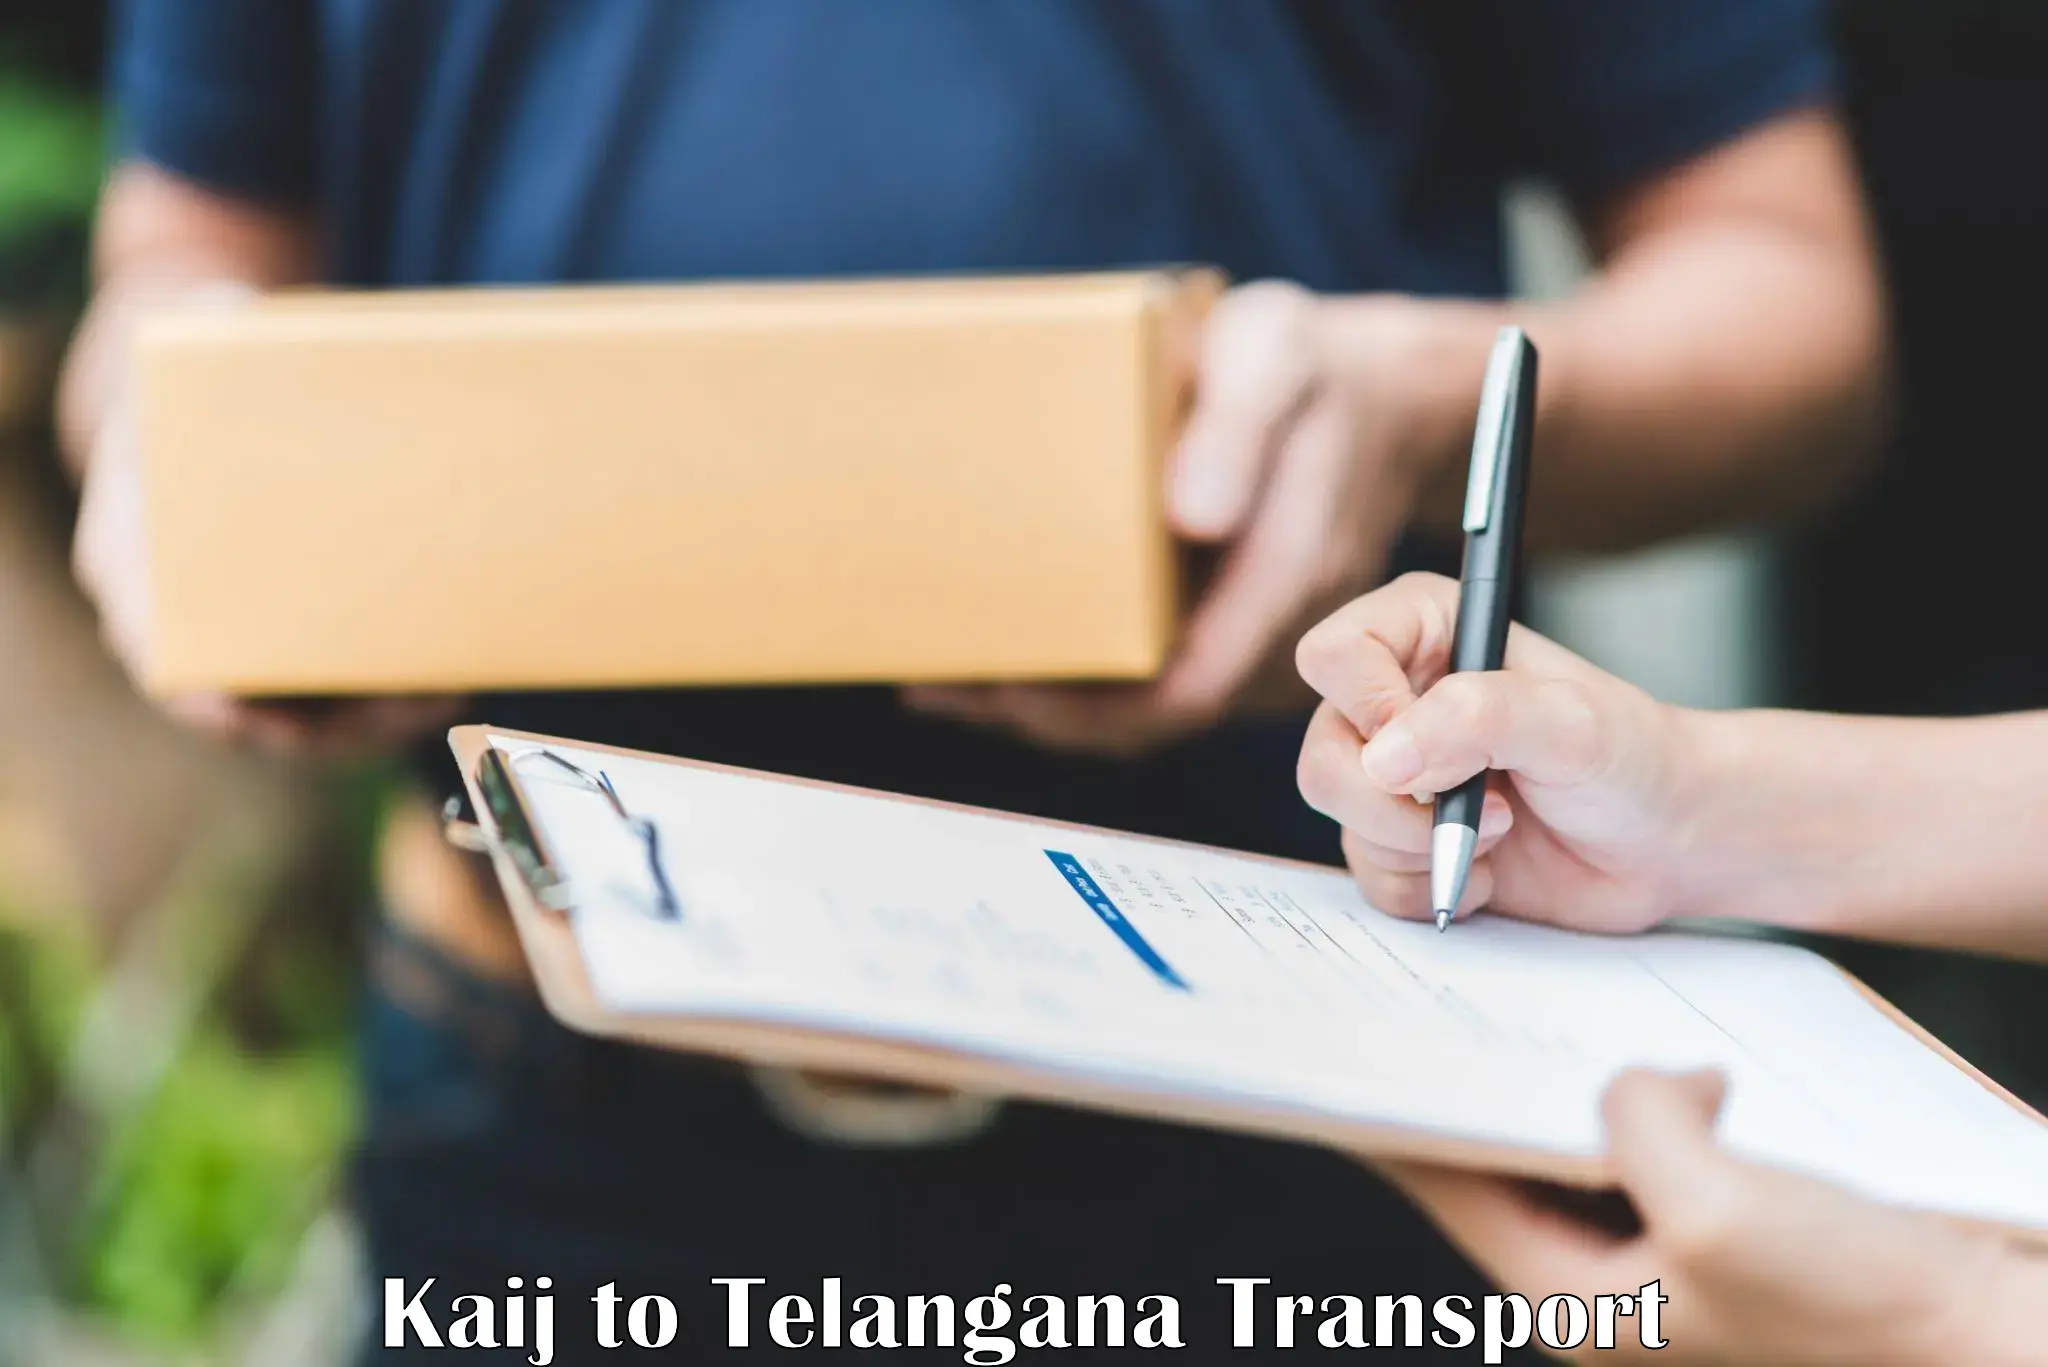 Daily transport service Kaij to Chegunta